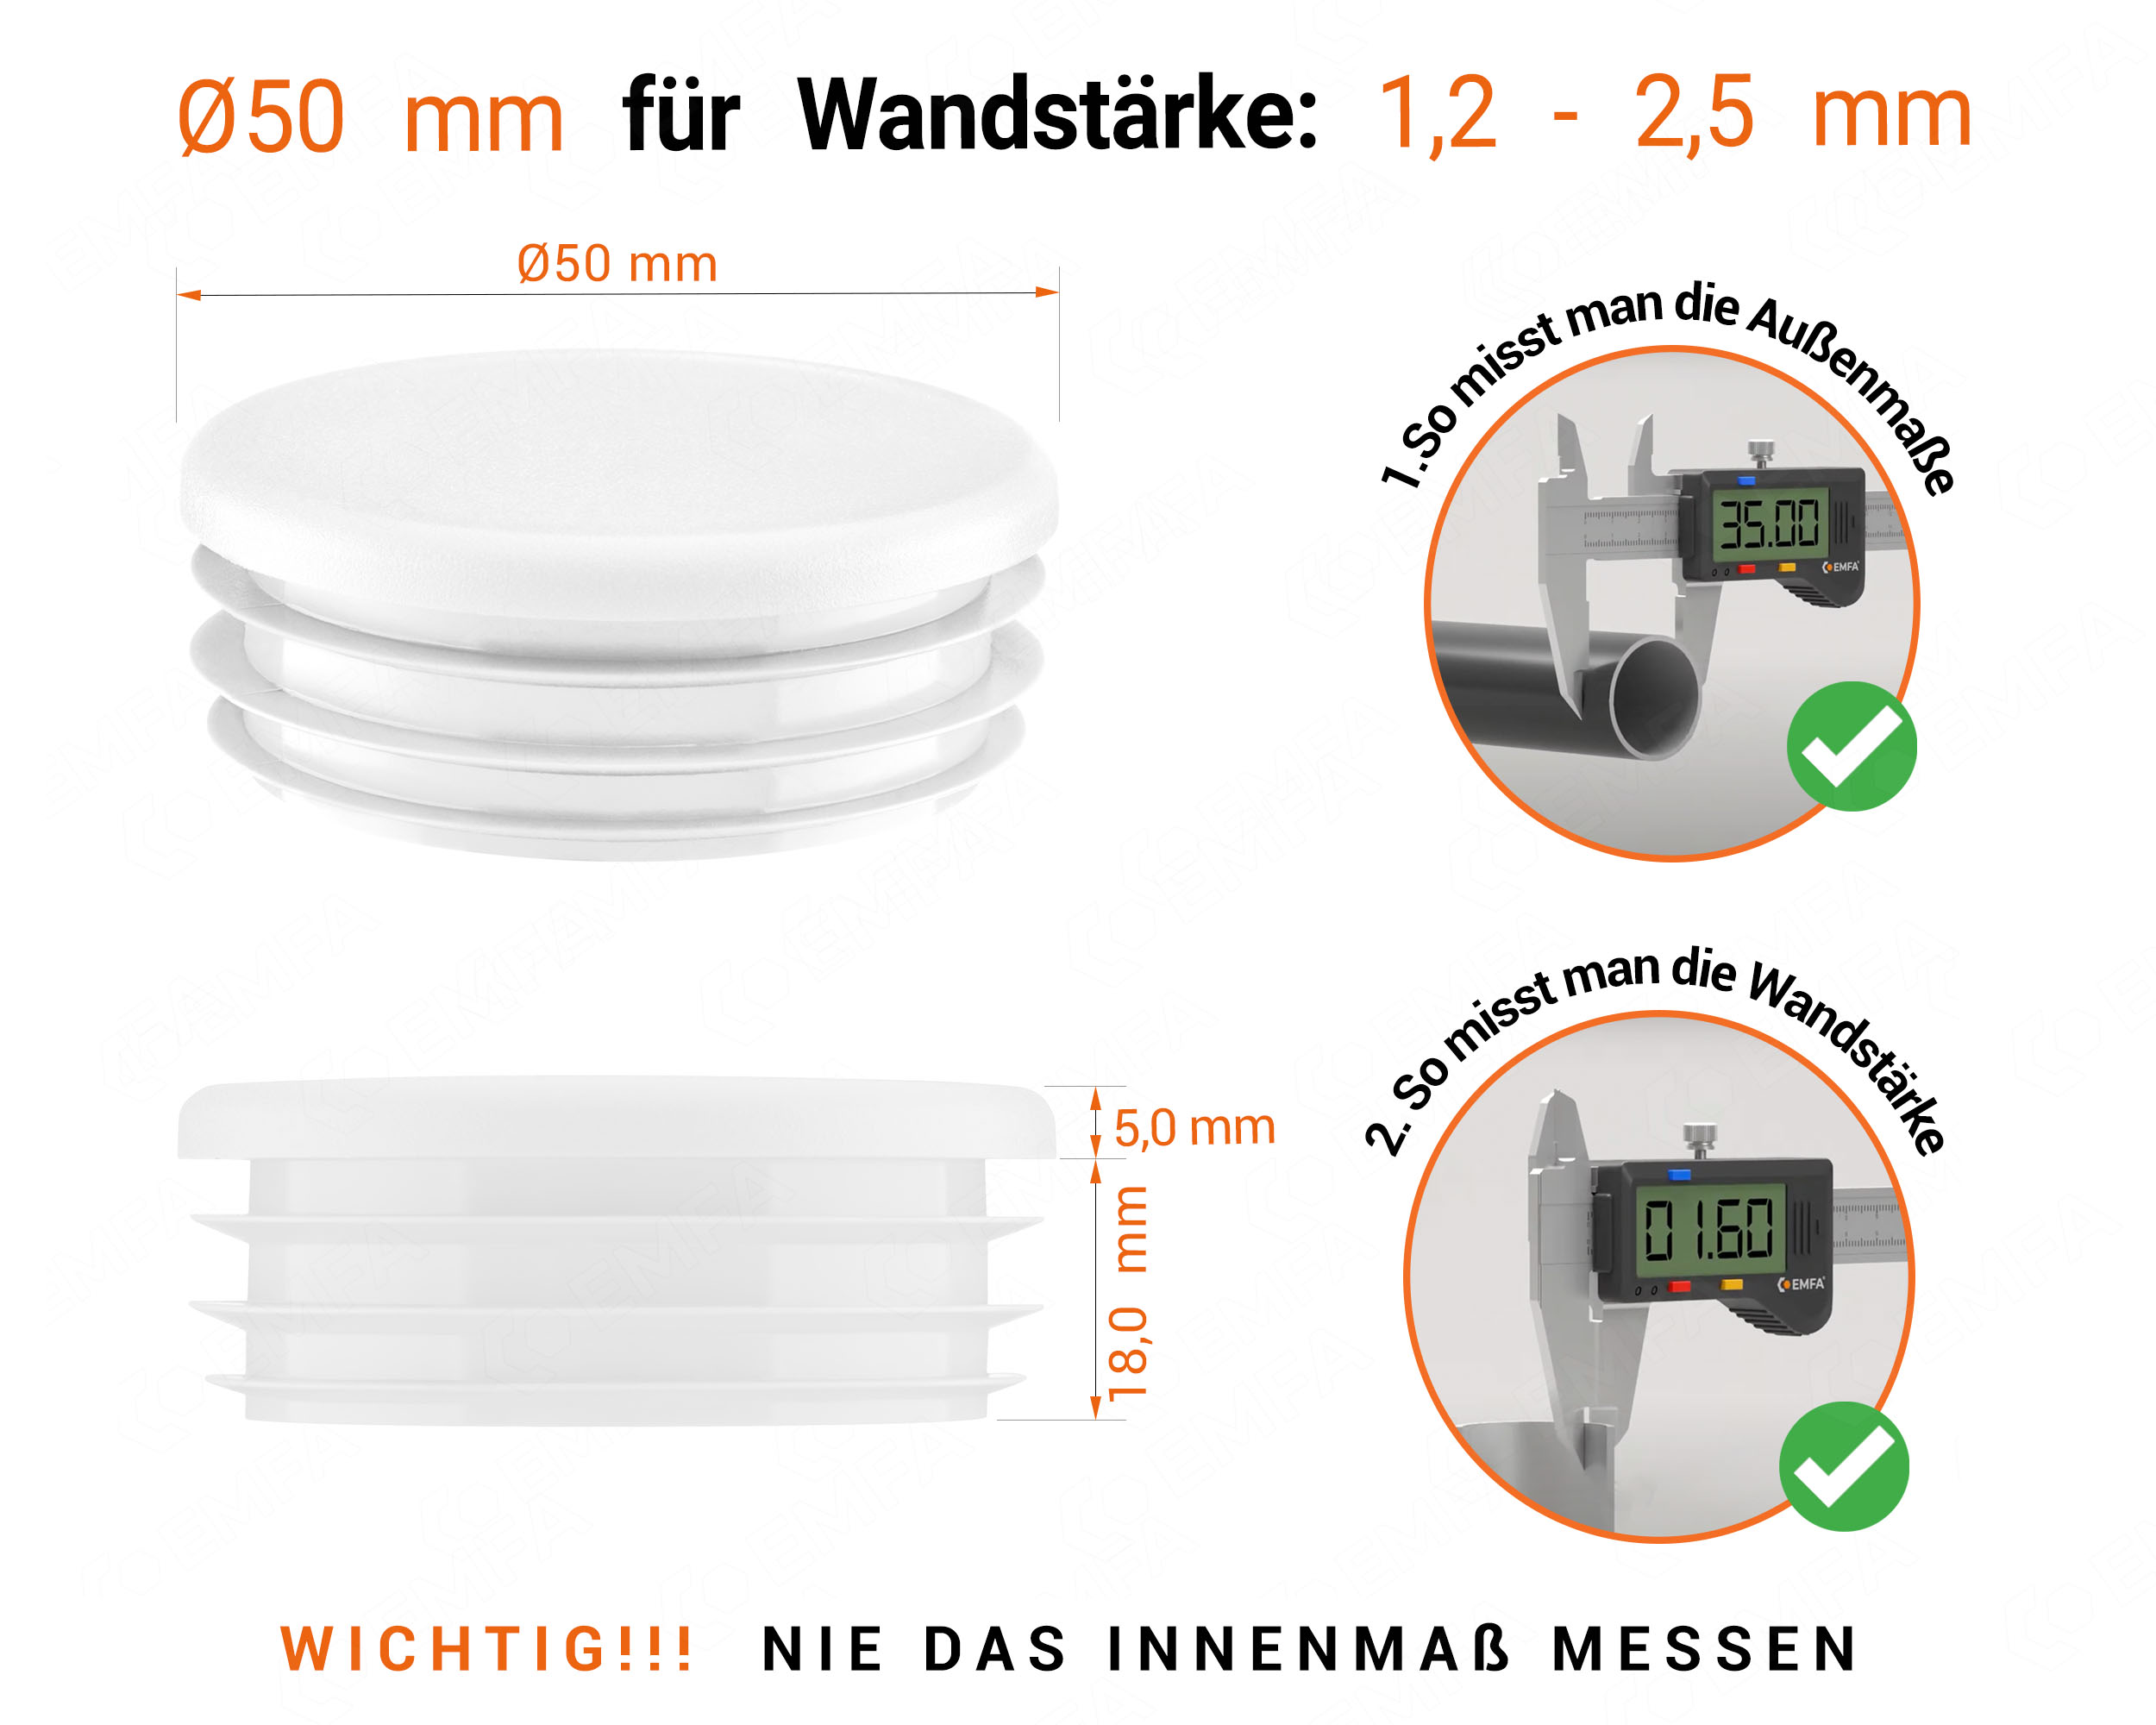 Weiße Endkappe für Rundrohre in der Größe 50 mm mit technischen Abmessungen und Anleitung für korrekte Messung